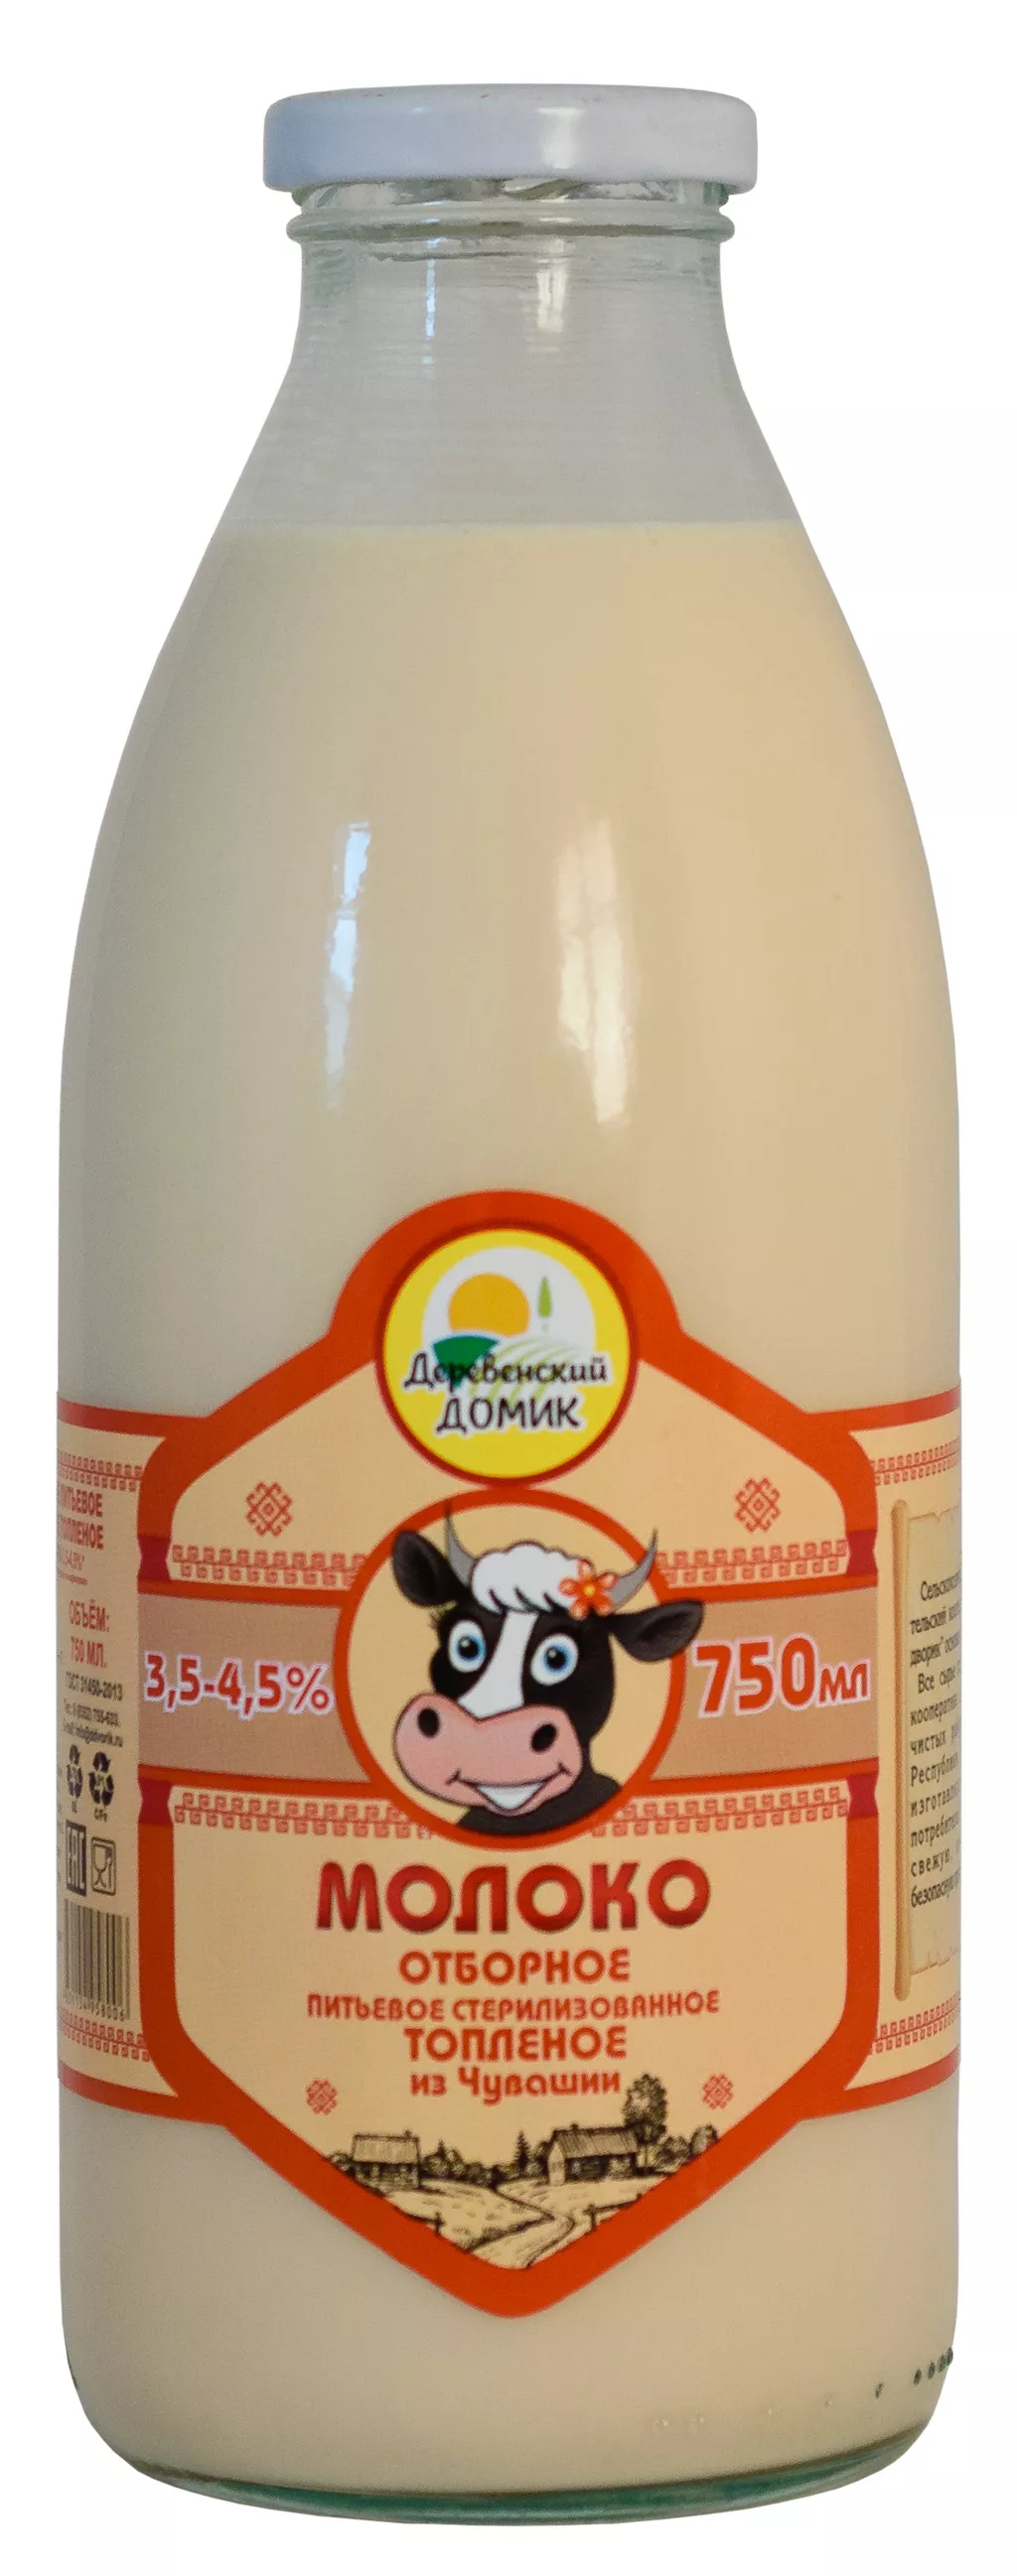  молоко сырое  козье в Чебоксарах и Чувашии 3